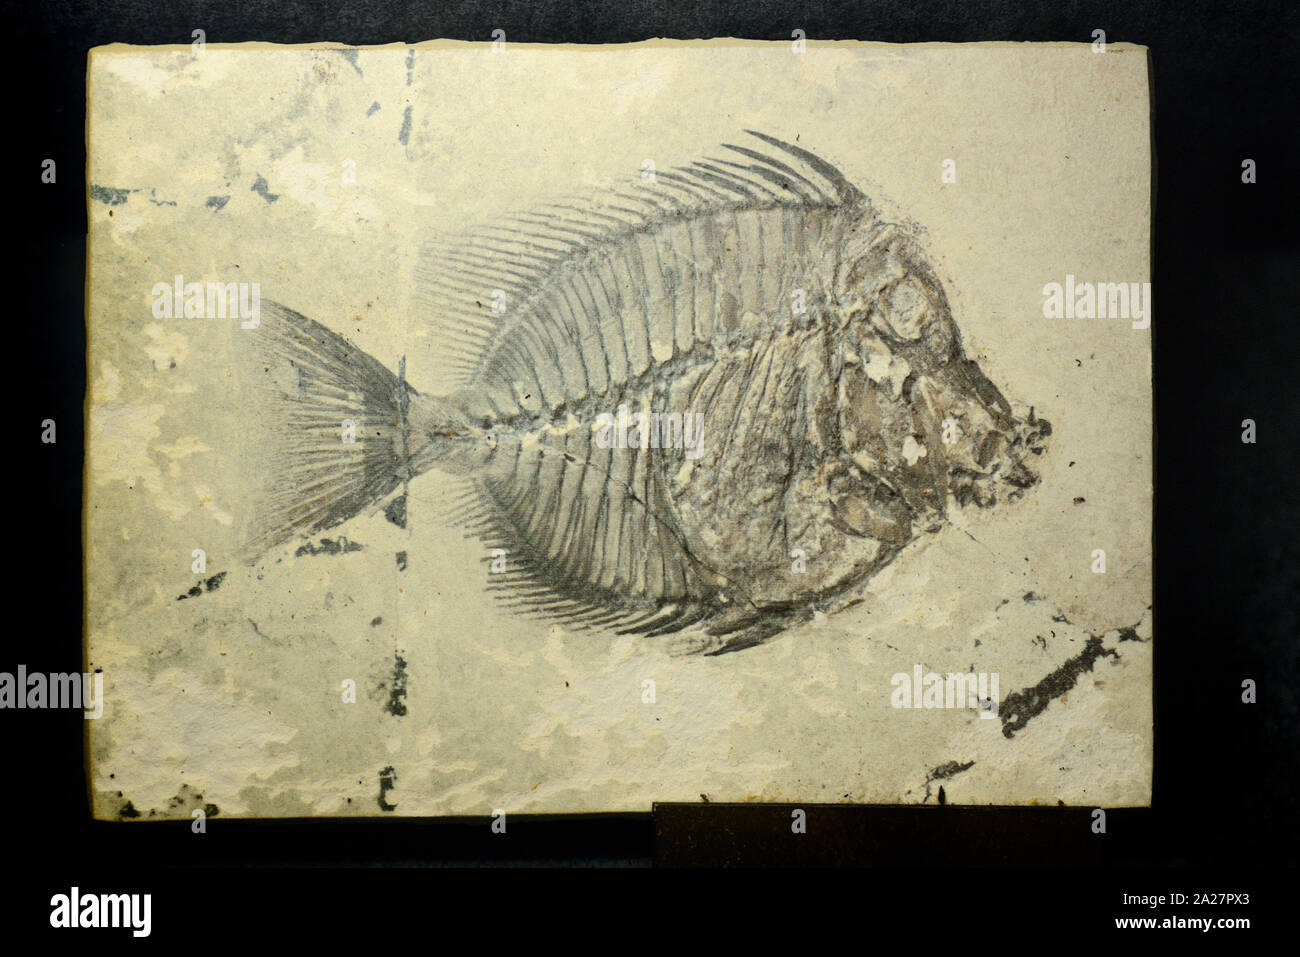 Naseus nuchalis Fossil, eine ausgestorbene Versteinerte Doktorfische oder Fisch Fossilen aus dem Eozän Ära 40 MA in Verona Italien entdeckt Stockfoto